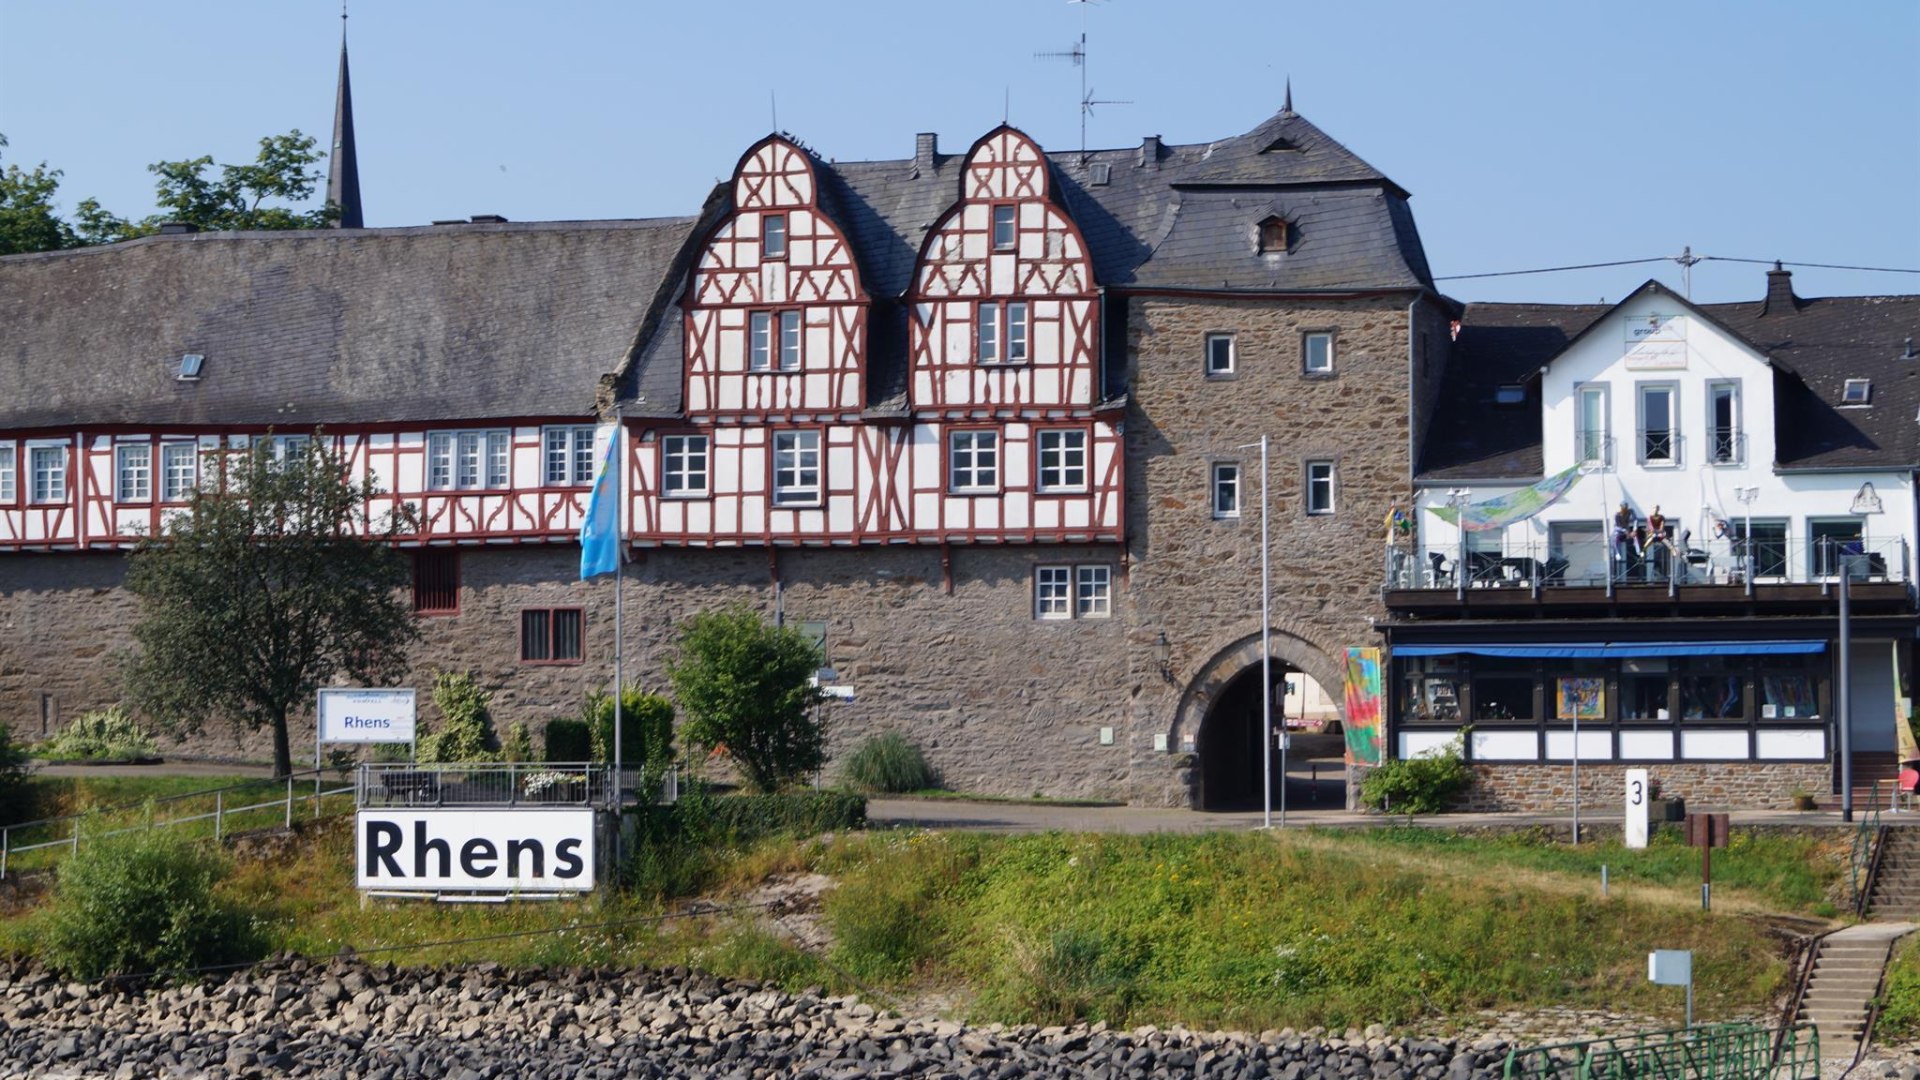 Rheintor | © Tourist-Information Erlebnis Rheinbogen